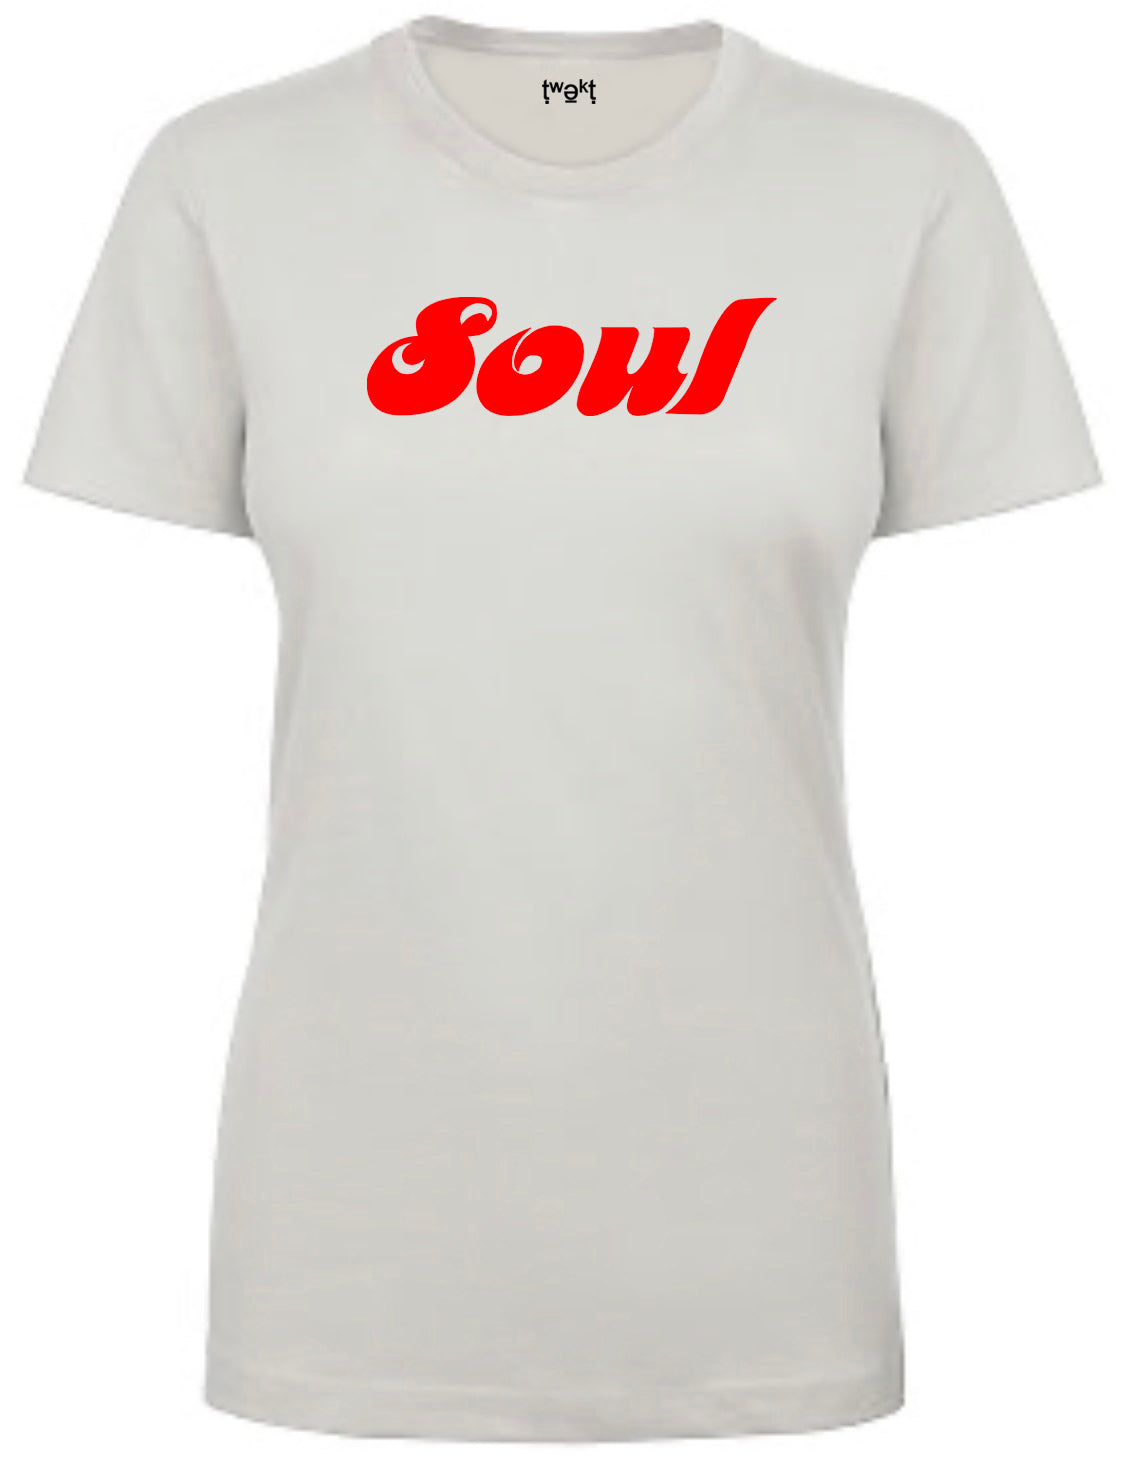 Soul Women T-shirt